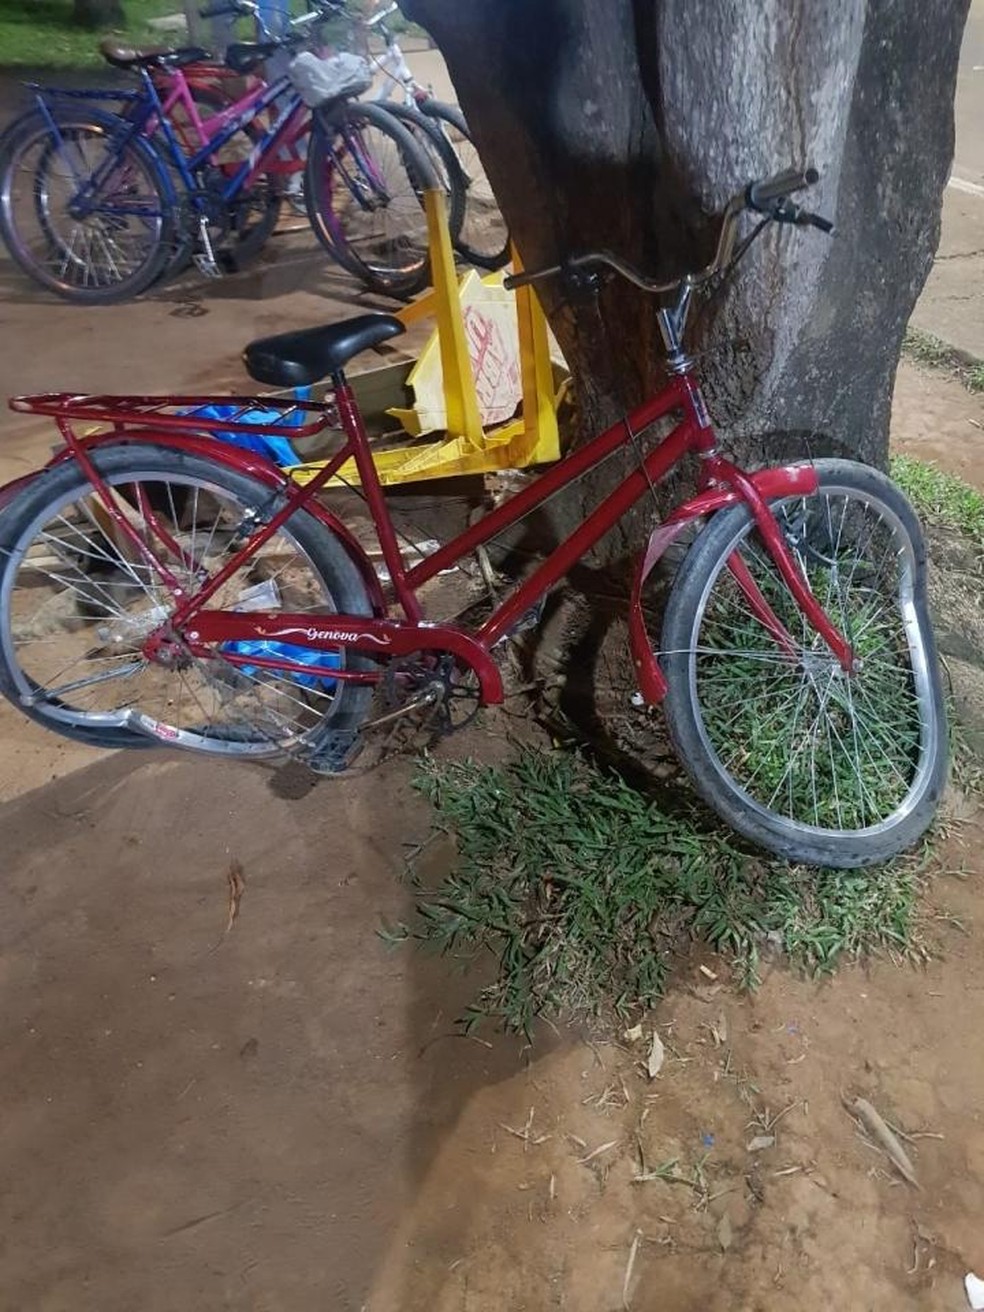 Bicicleta foi atingida por veículo desgovernado em Ariquemes (RO) — Foto: Reprodução/Redes Sociais 